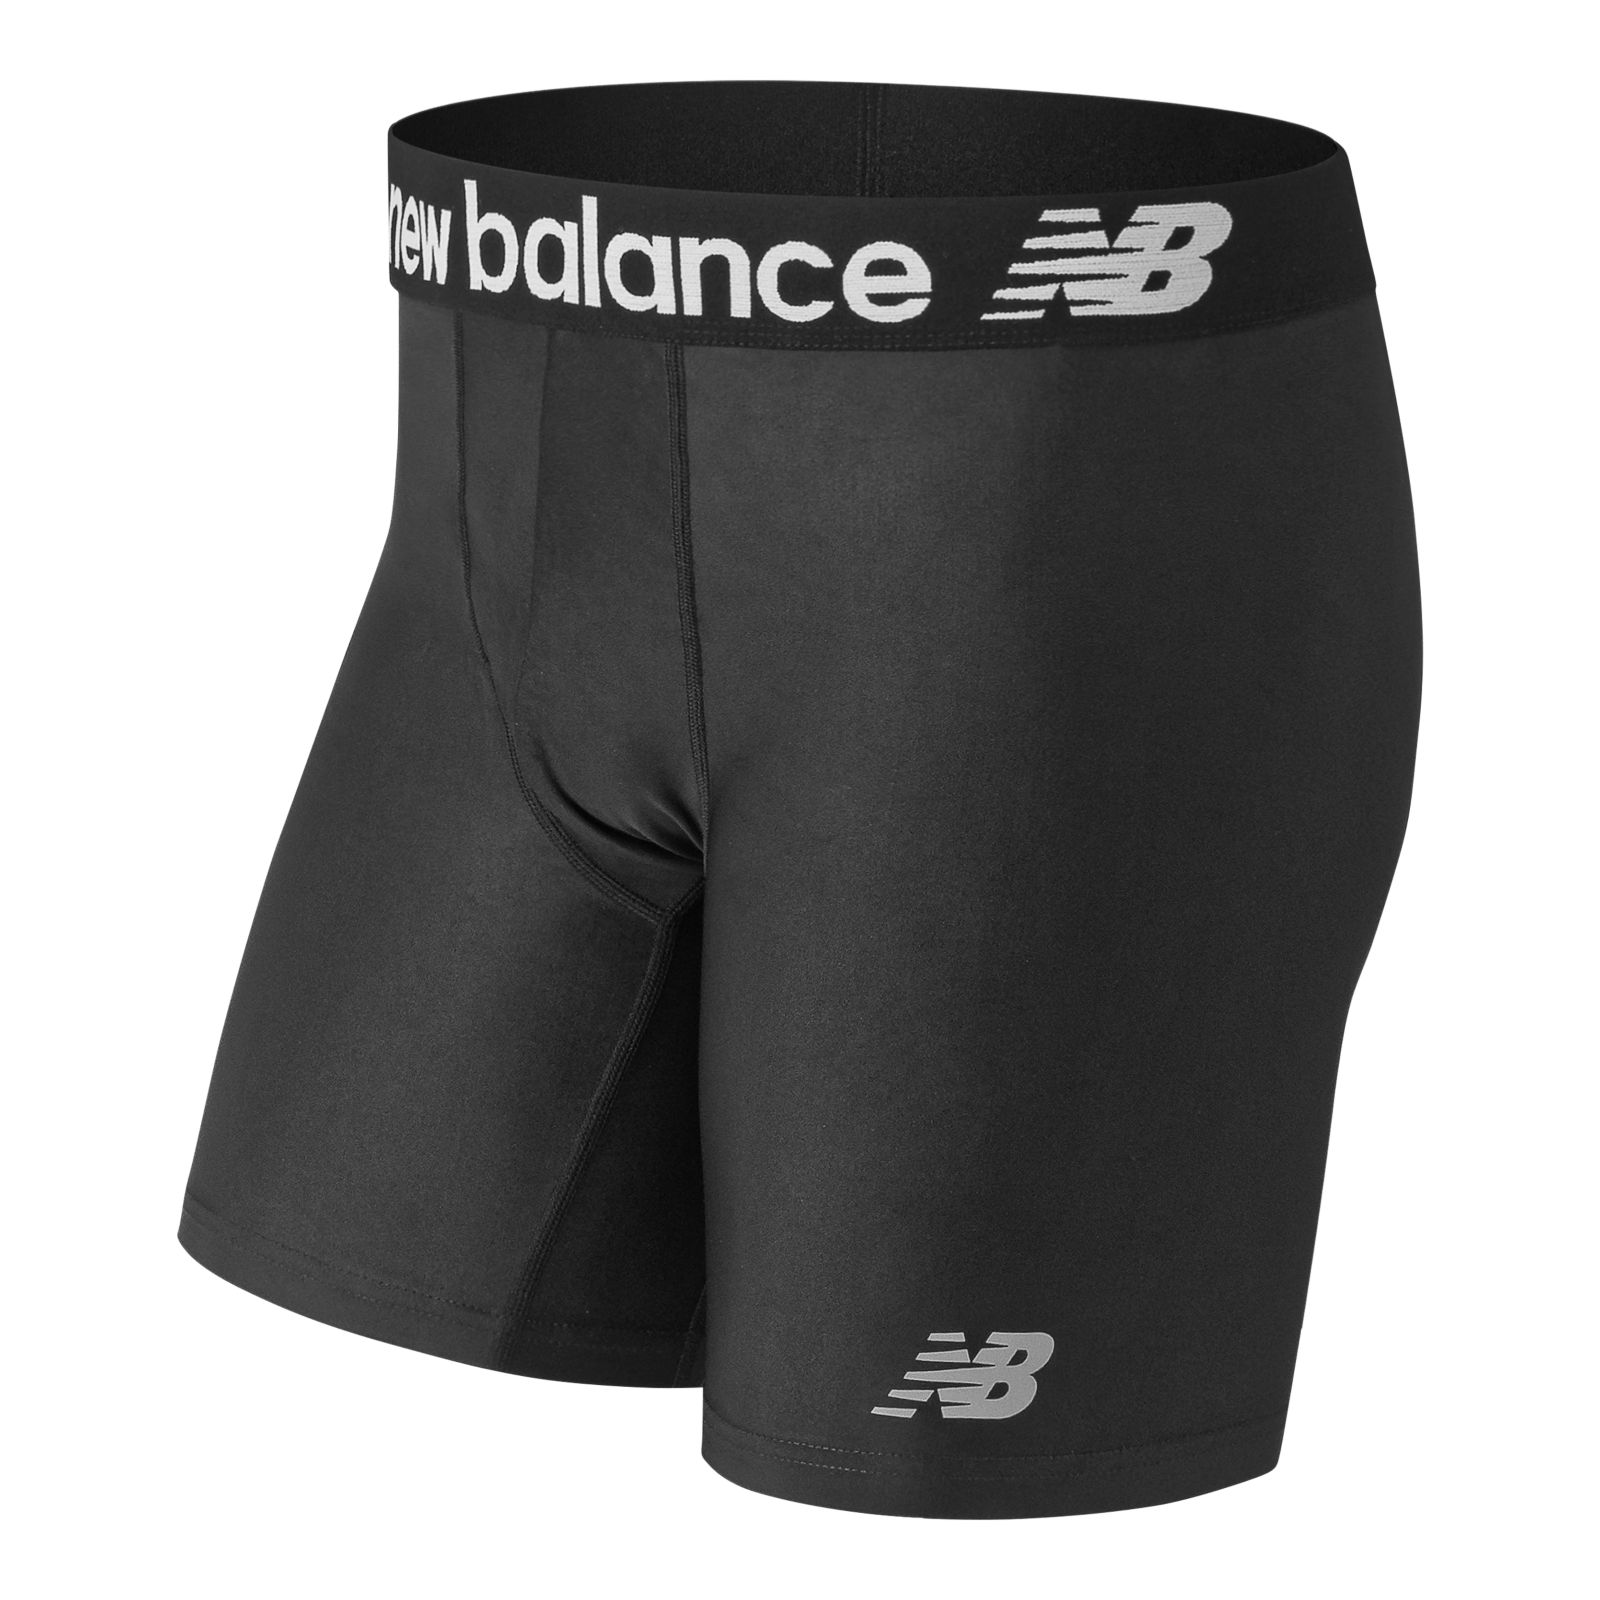 New Balance Performance Underwear 9 Inch Inseam Boxer Brief